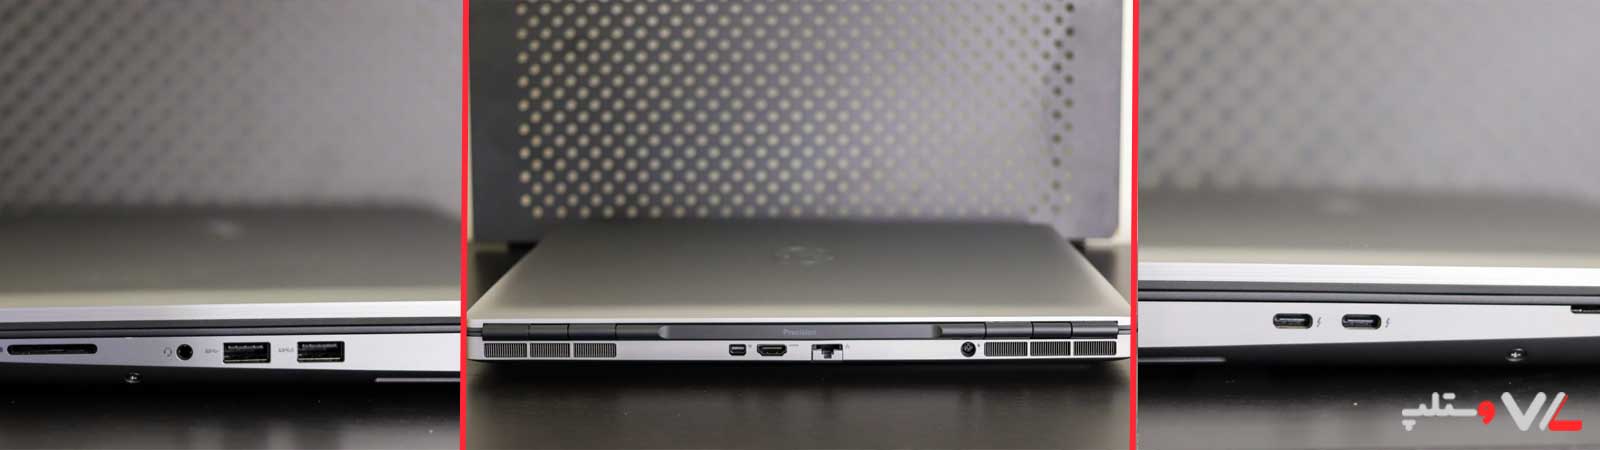 پورت های لپ تاپ Dell Precision 7560